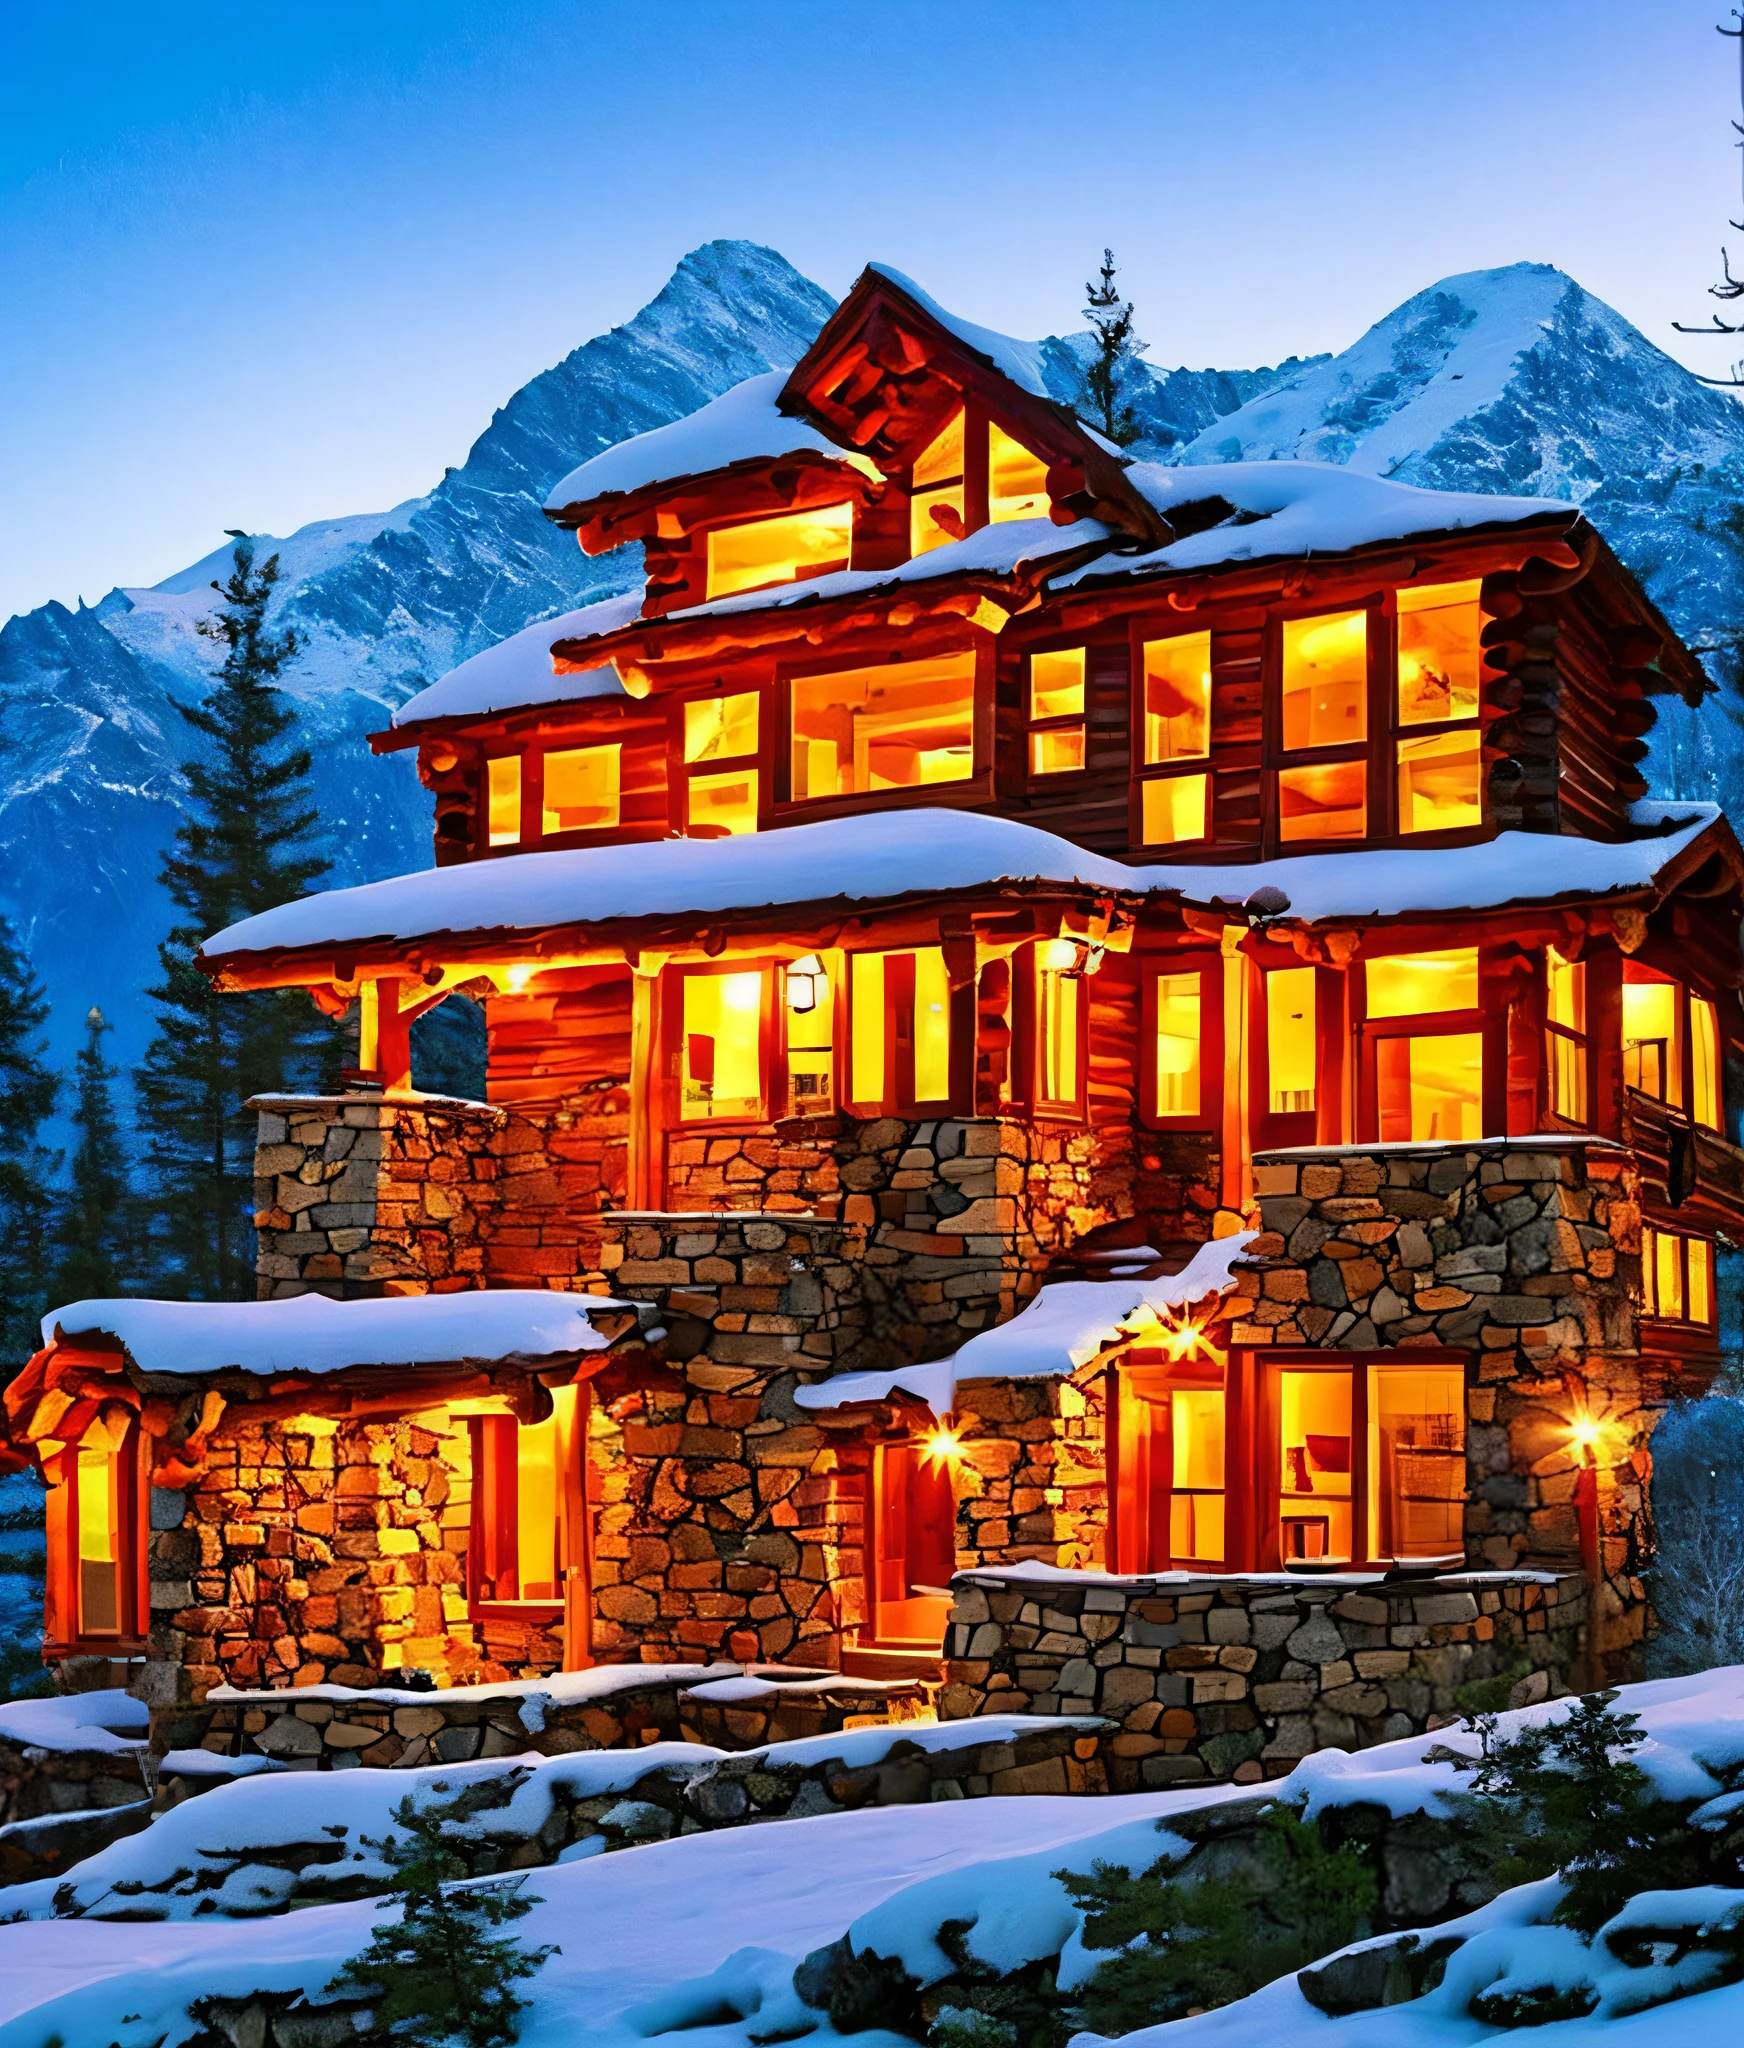 Crie um belo cenário de montanha com uma casa de madeira ao lado de uma montanha acidentada com picos nevados e um lindo pôr do sol